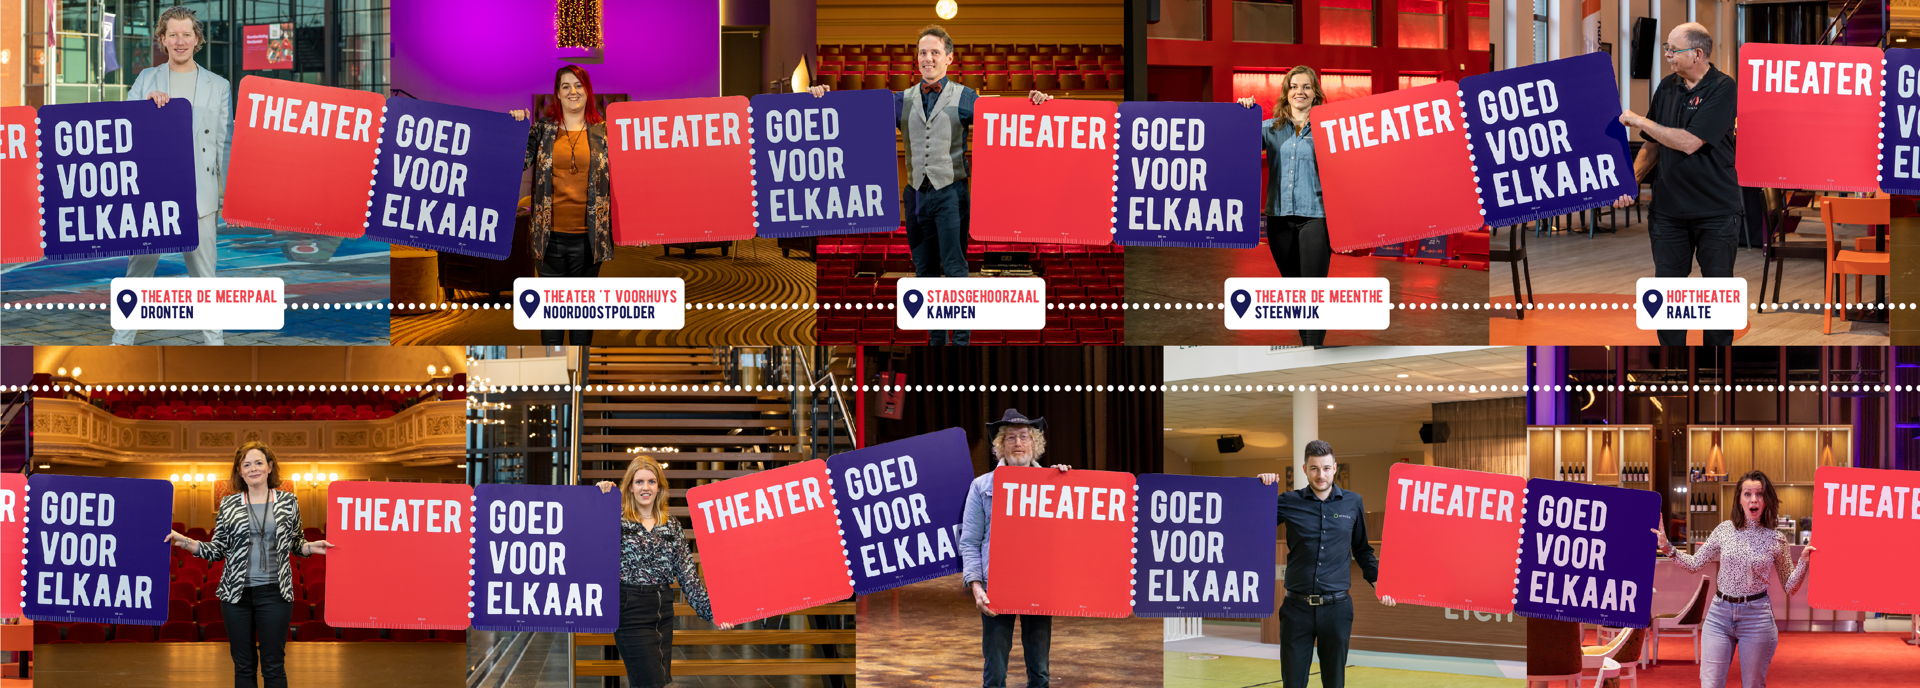 Cultuurregio Zwolle - Theater goed voor elkaar